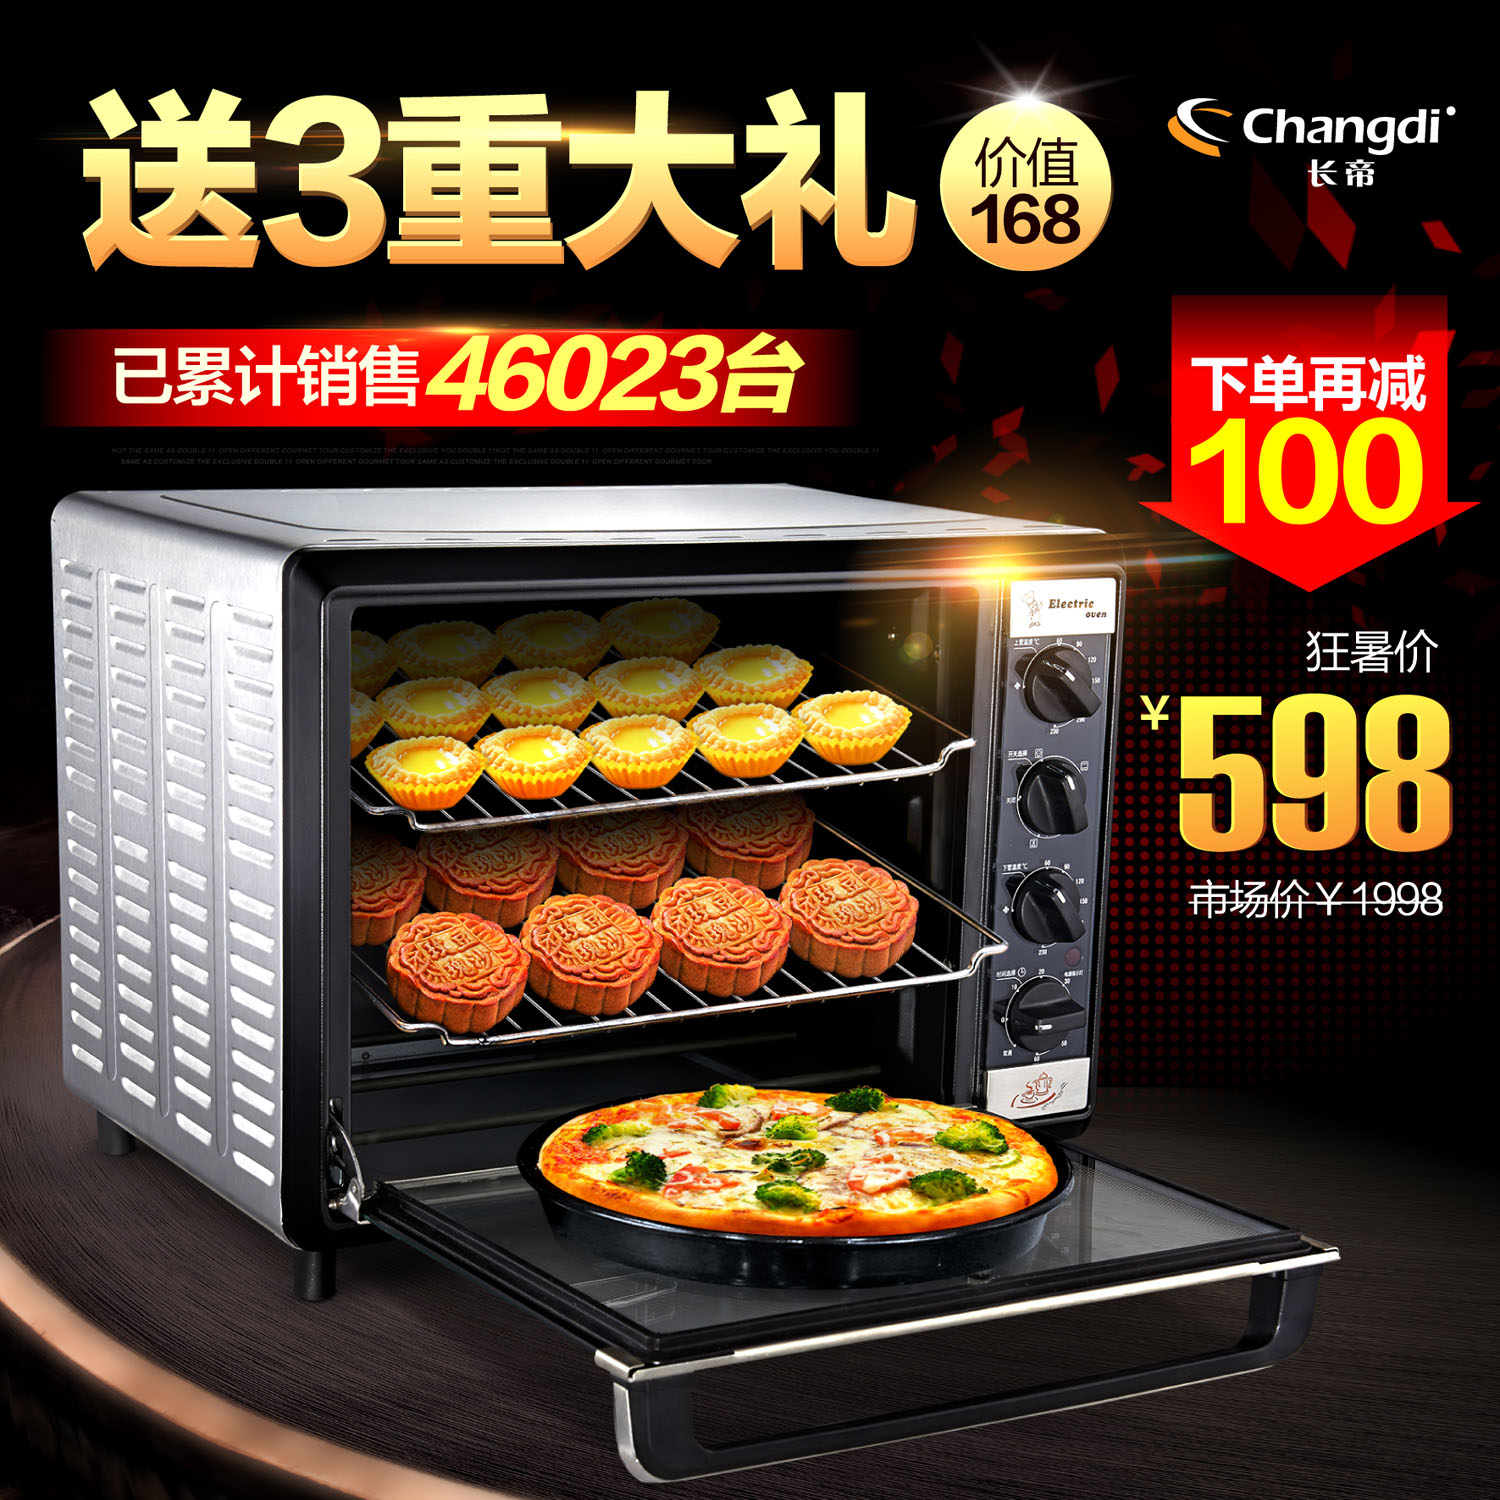 长帝CKTF-32GS上下独立控温3.5版电烤箱家用烘焙器具正品特价包邮